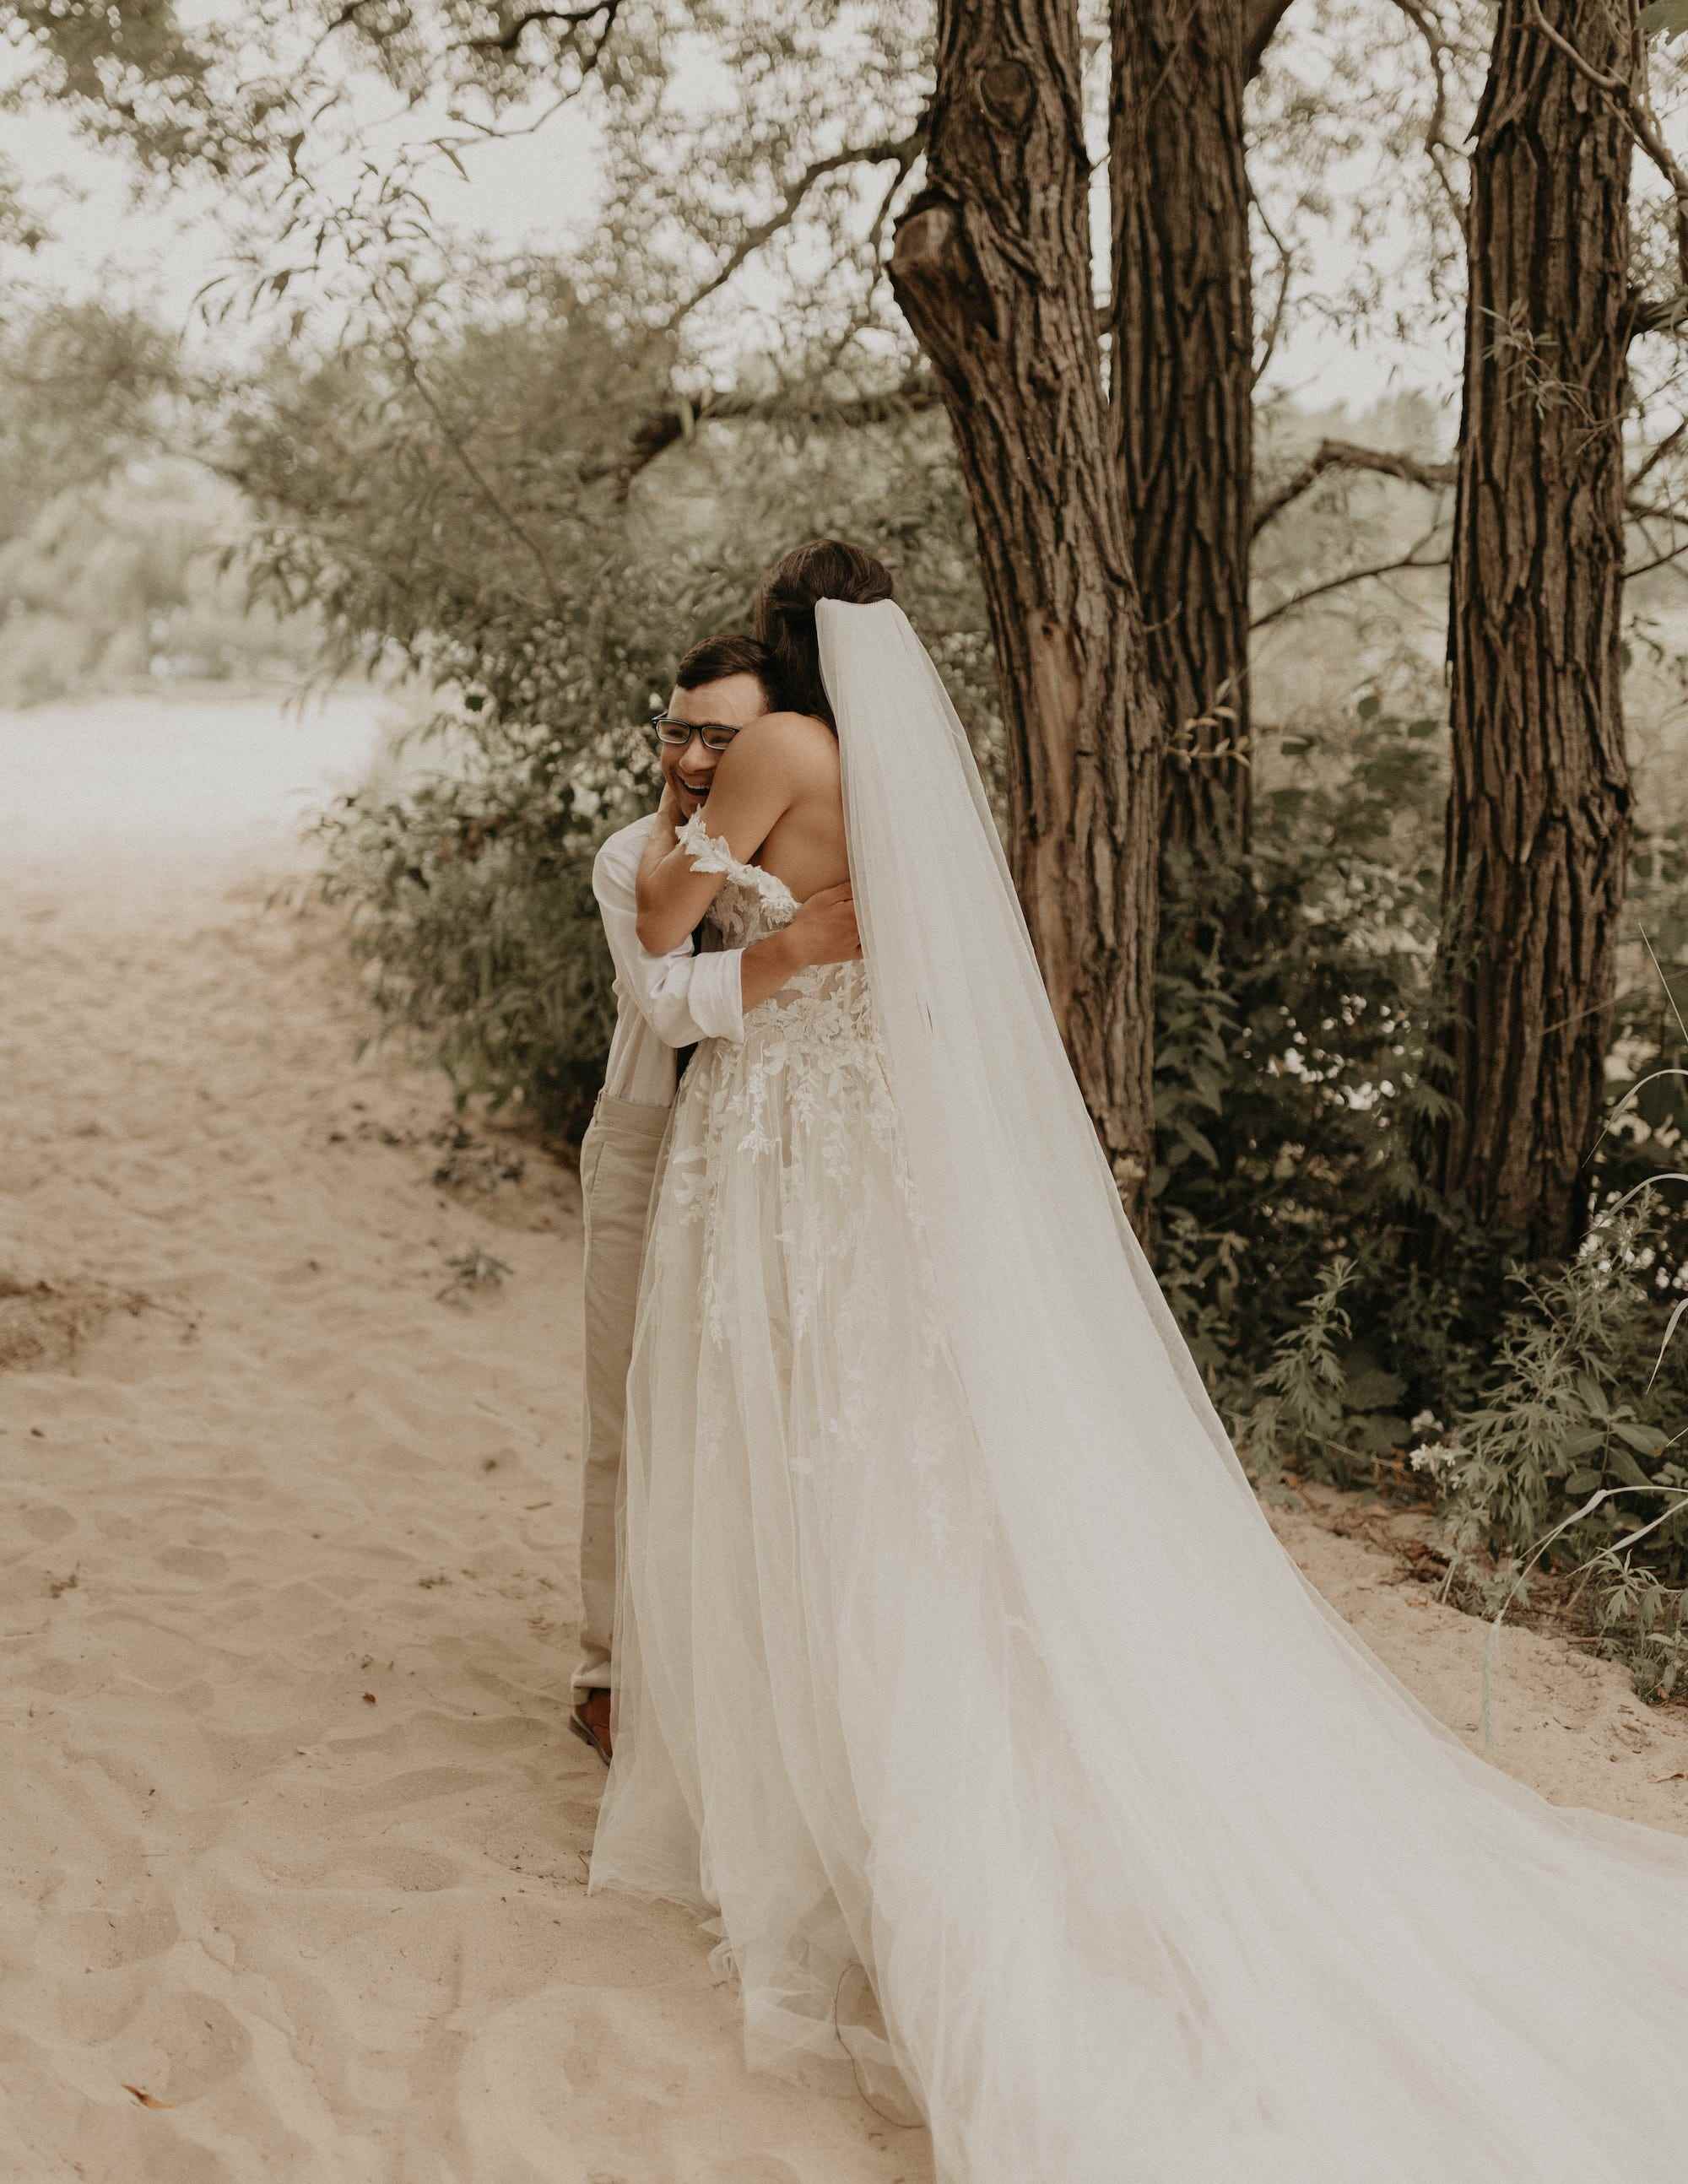 Eine Braut und ihr Bruder umarmen sich in Hochzeitskleidung am Strand.